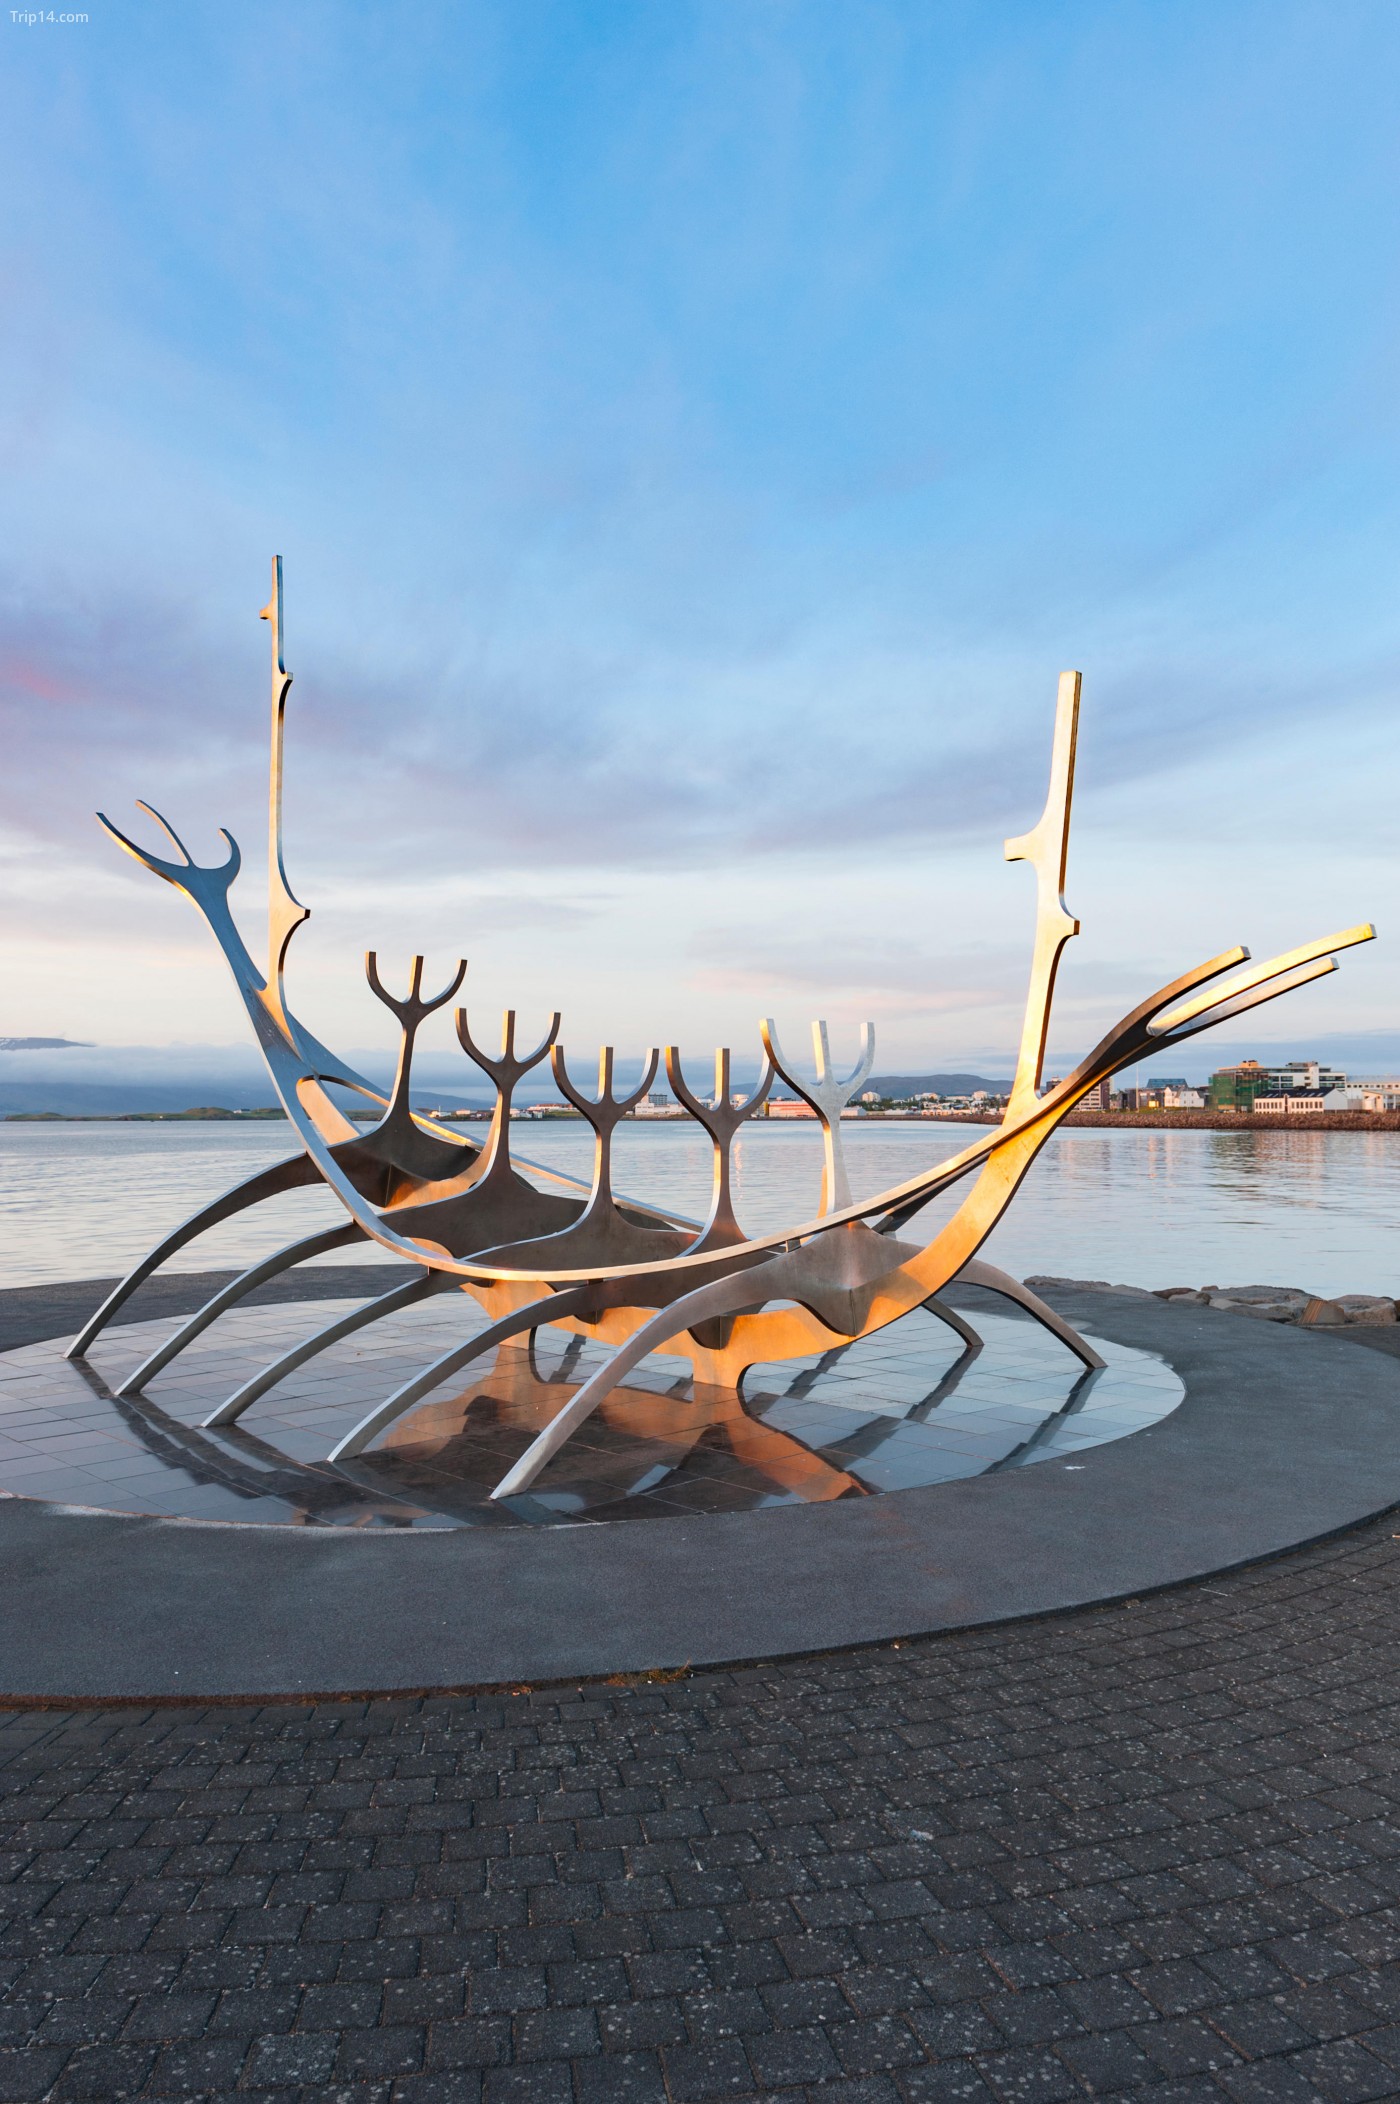 Sun Voyager (Solfar), một tác phẩm điêu khắc bằng kim loại của tàu Viking của nghệ sĩ Jon Gunnar Arnason, tại bờ biển của thành phố Reykjavik, Iceland, được xây dựng như một cực dương của mặt trời. - Trip14.com